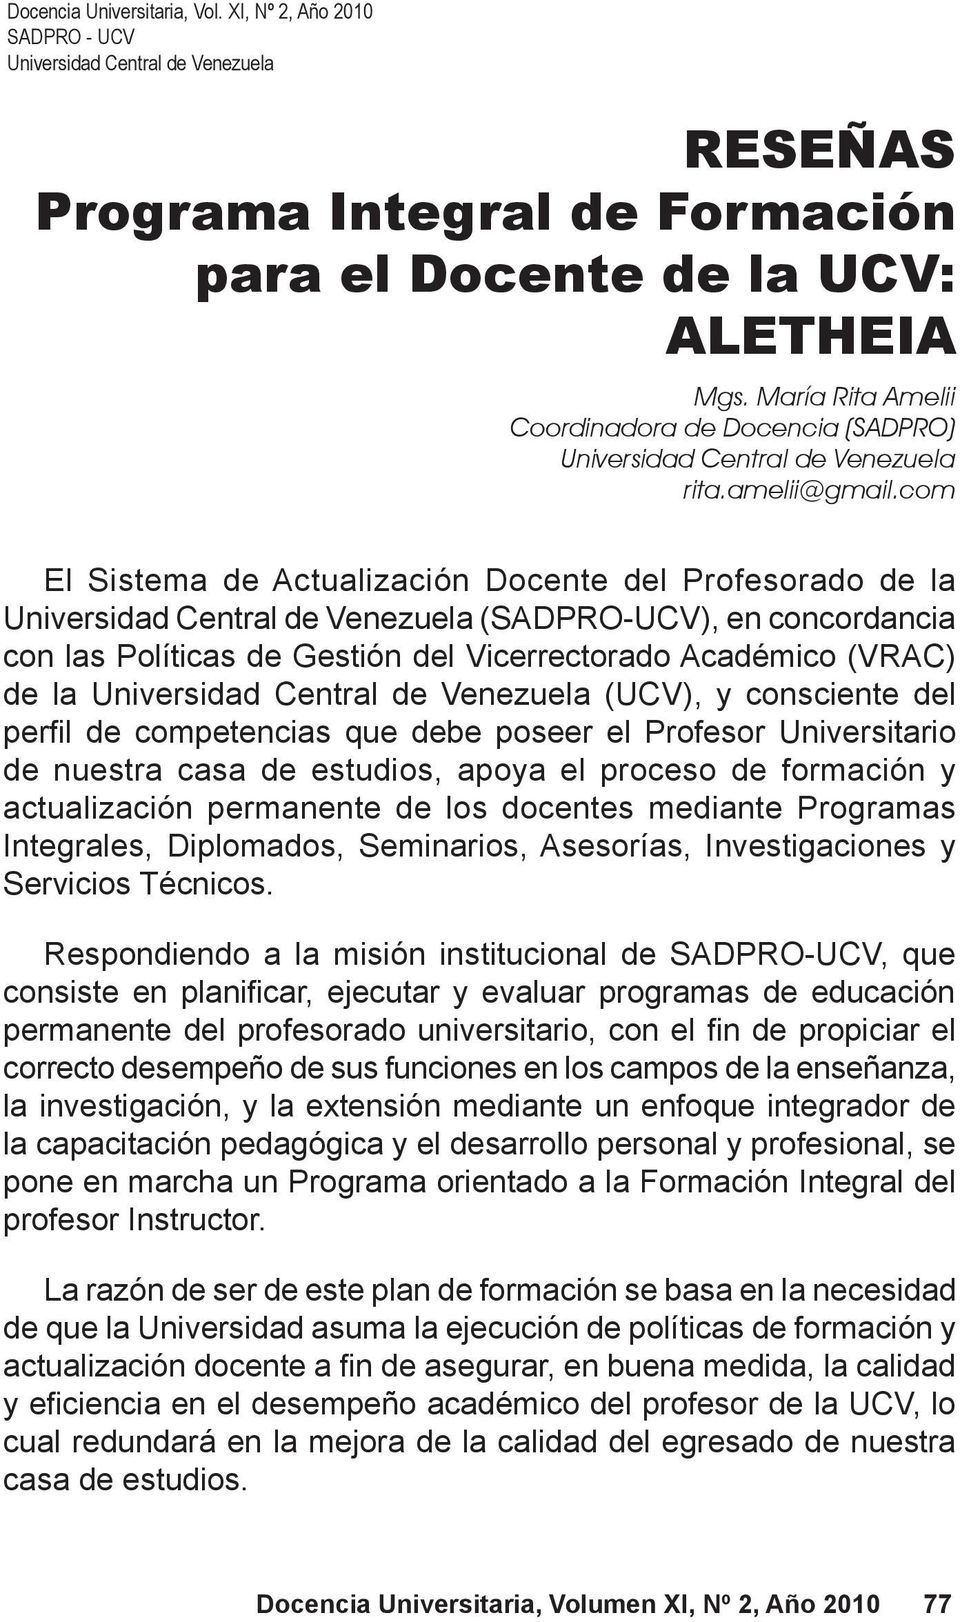 María Rita Amelii Coordinadora de Docencia (SADPRO) Universidad Central de Venezuela rita.amelii@gmail.